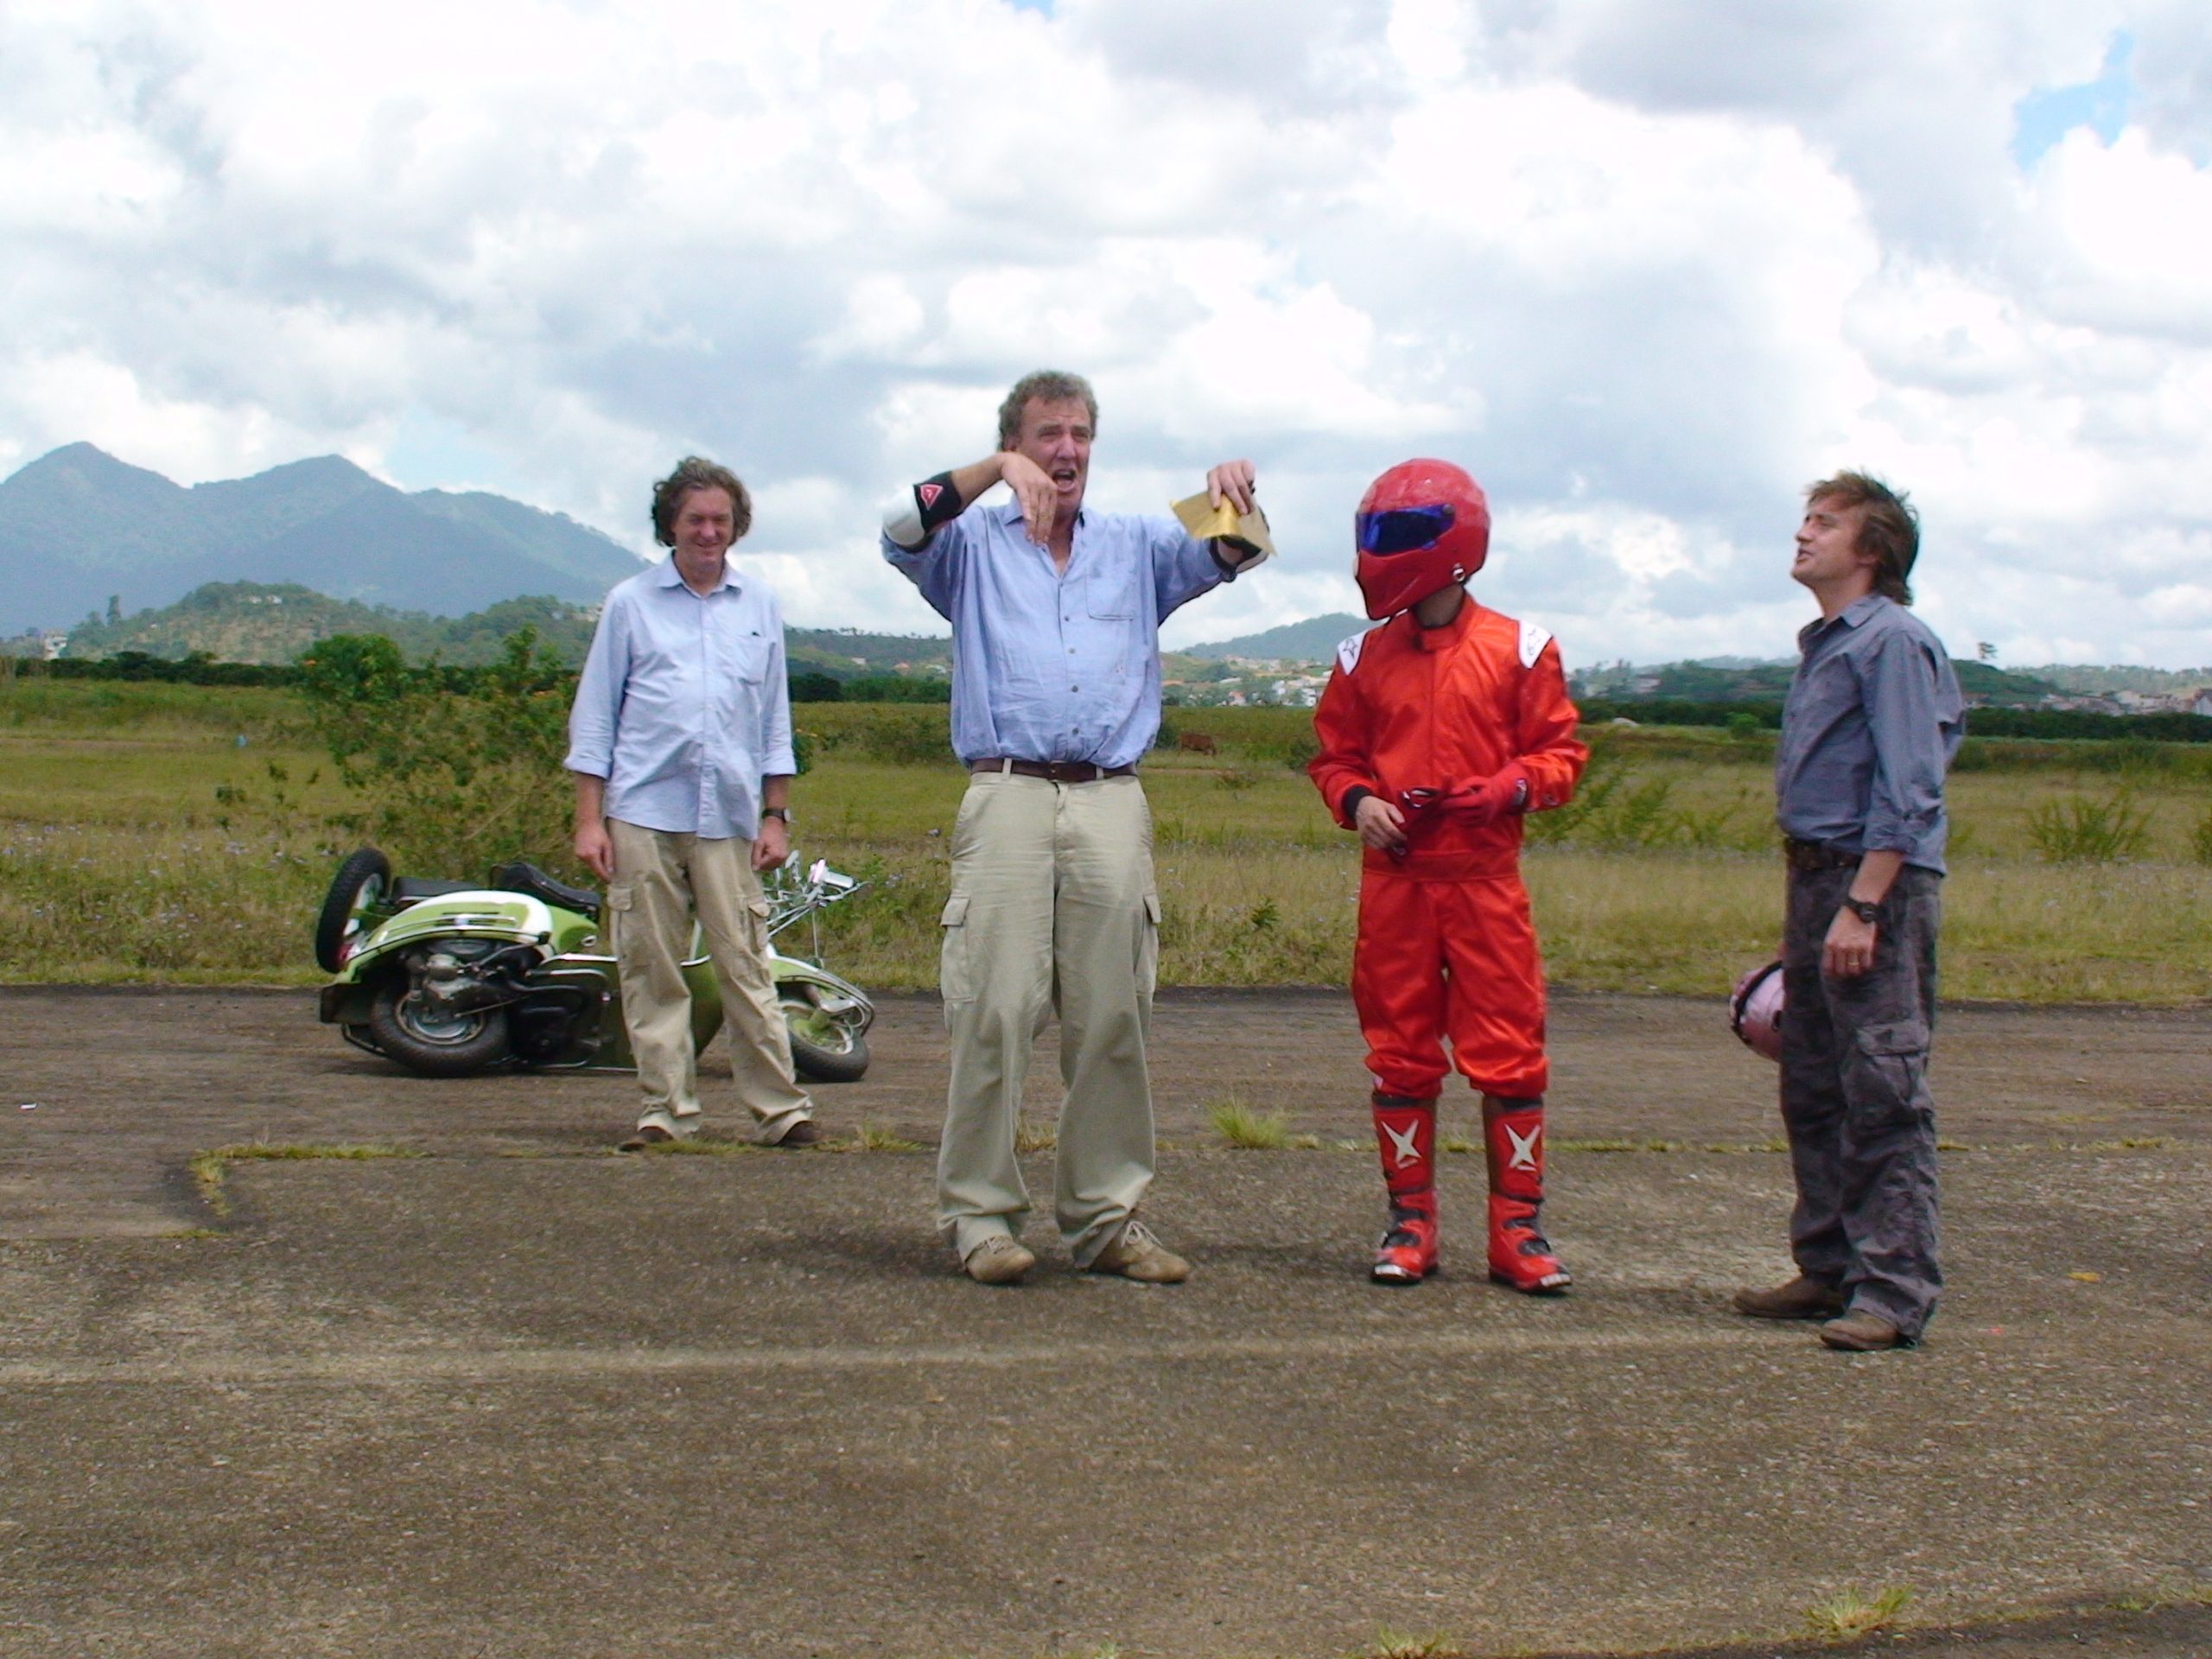 the Top Gear crew in Vietnam